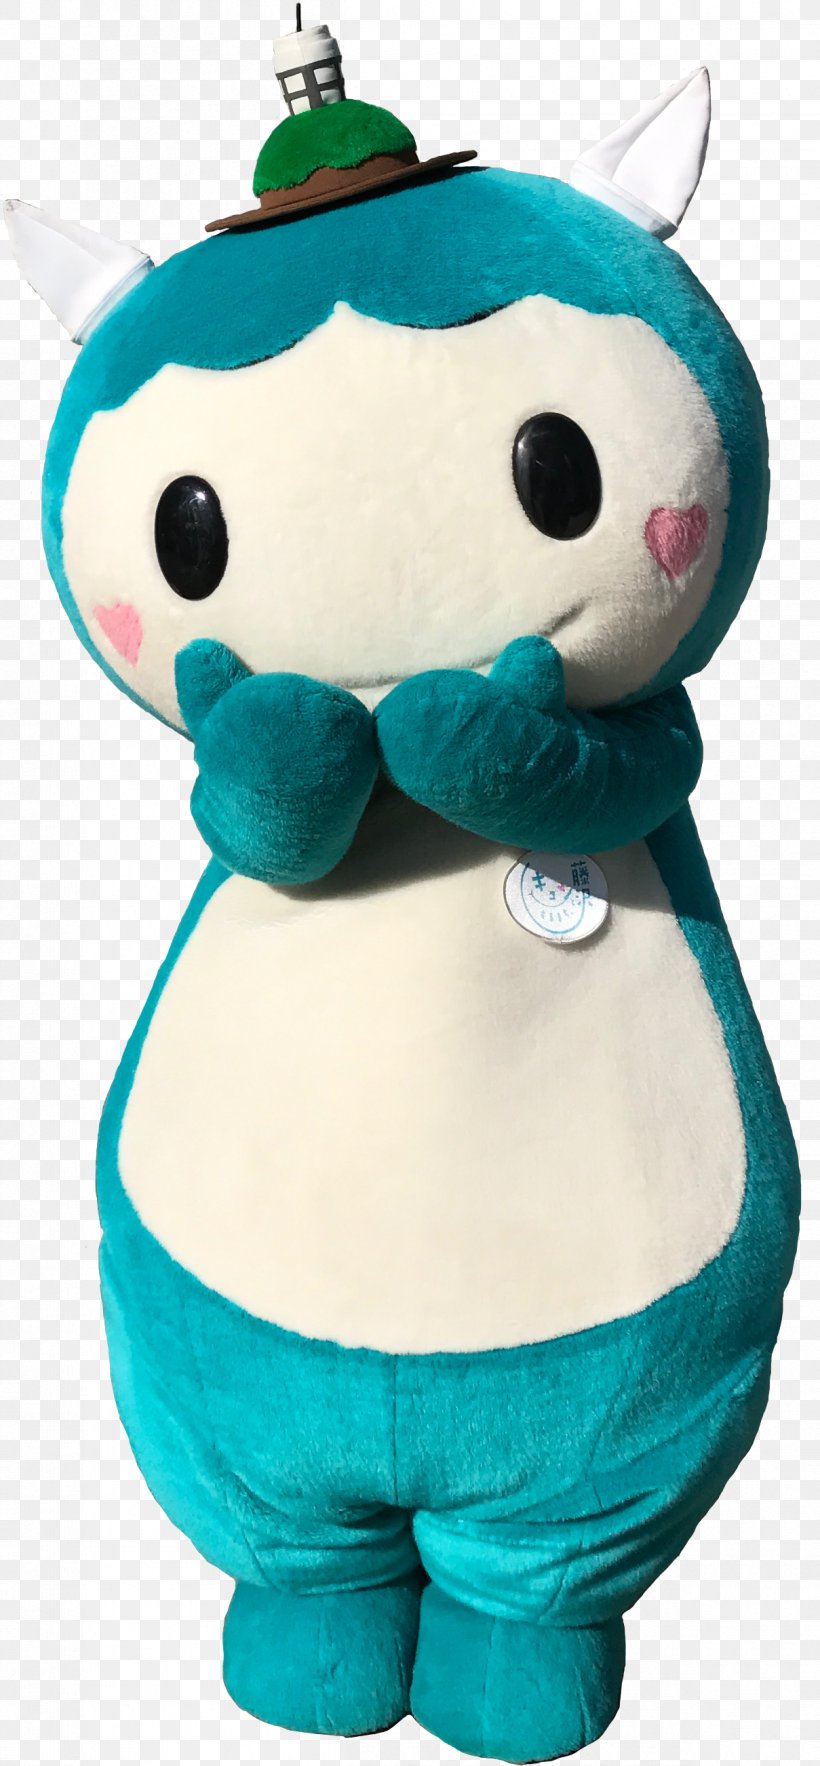 Plush Mascot Fujisawa Stuffed Animals & Cuddly Toys Japanese Wisteria, PNG, 1209x2604px, Plush, Fujisawa, Japanese Wisteria, Mascot, Material Download Free